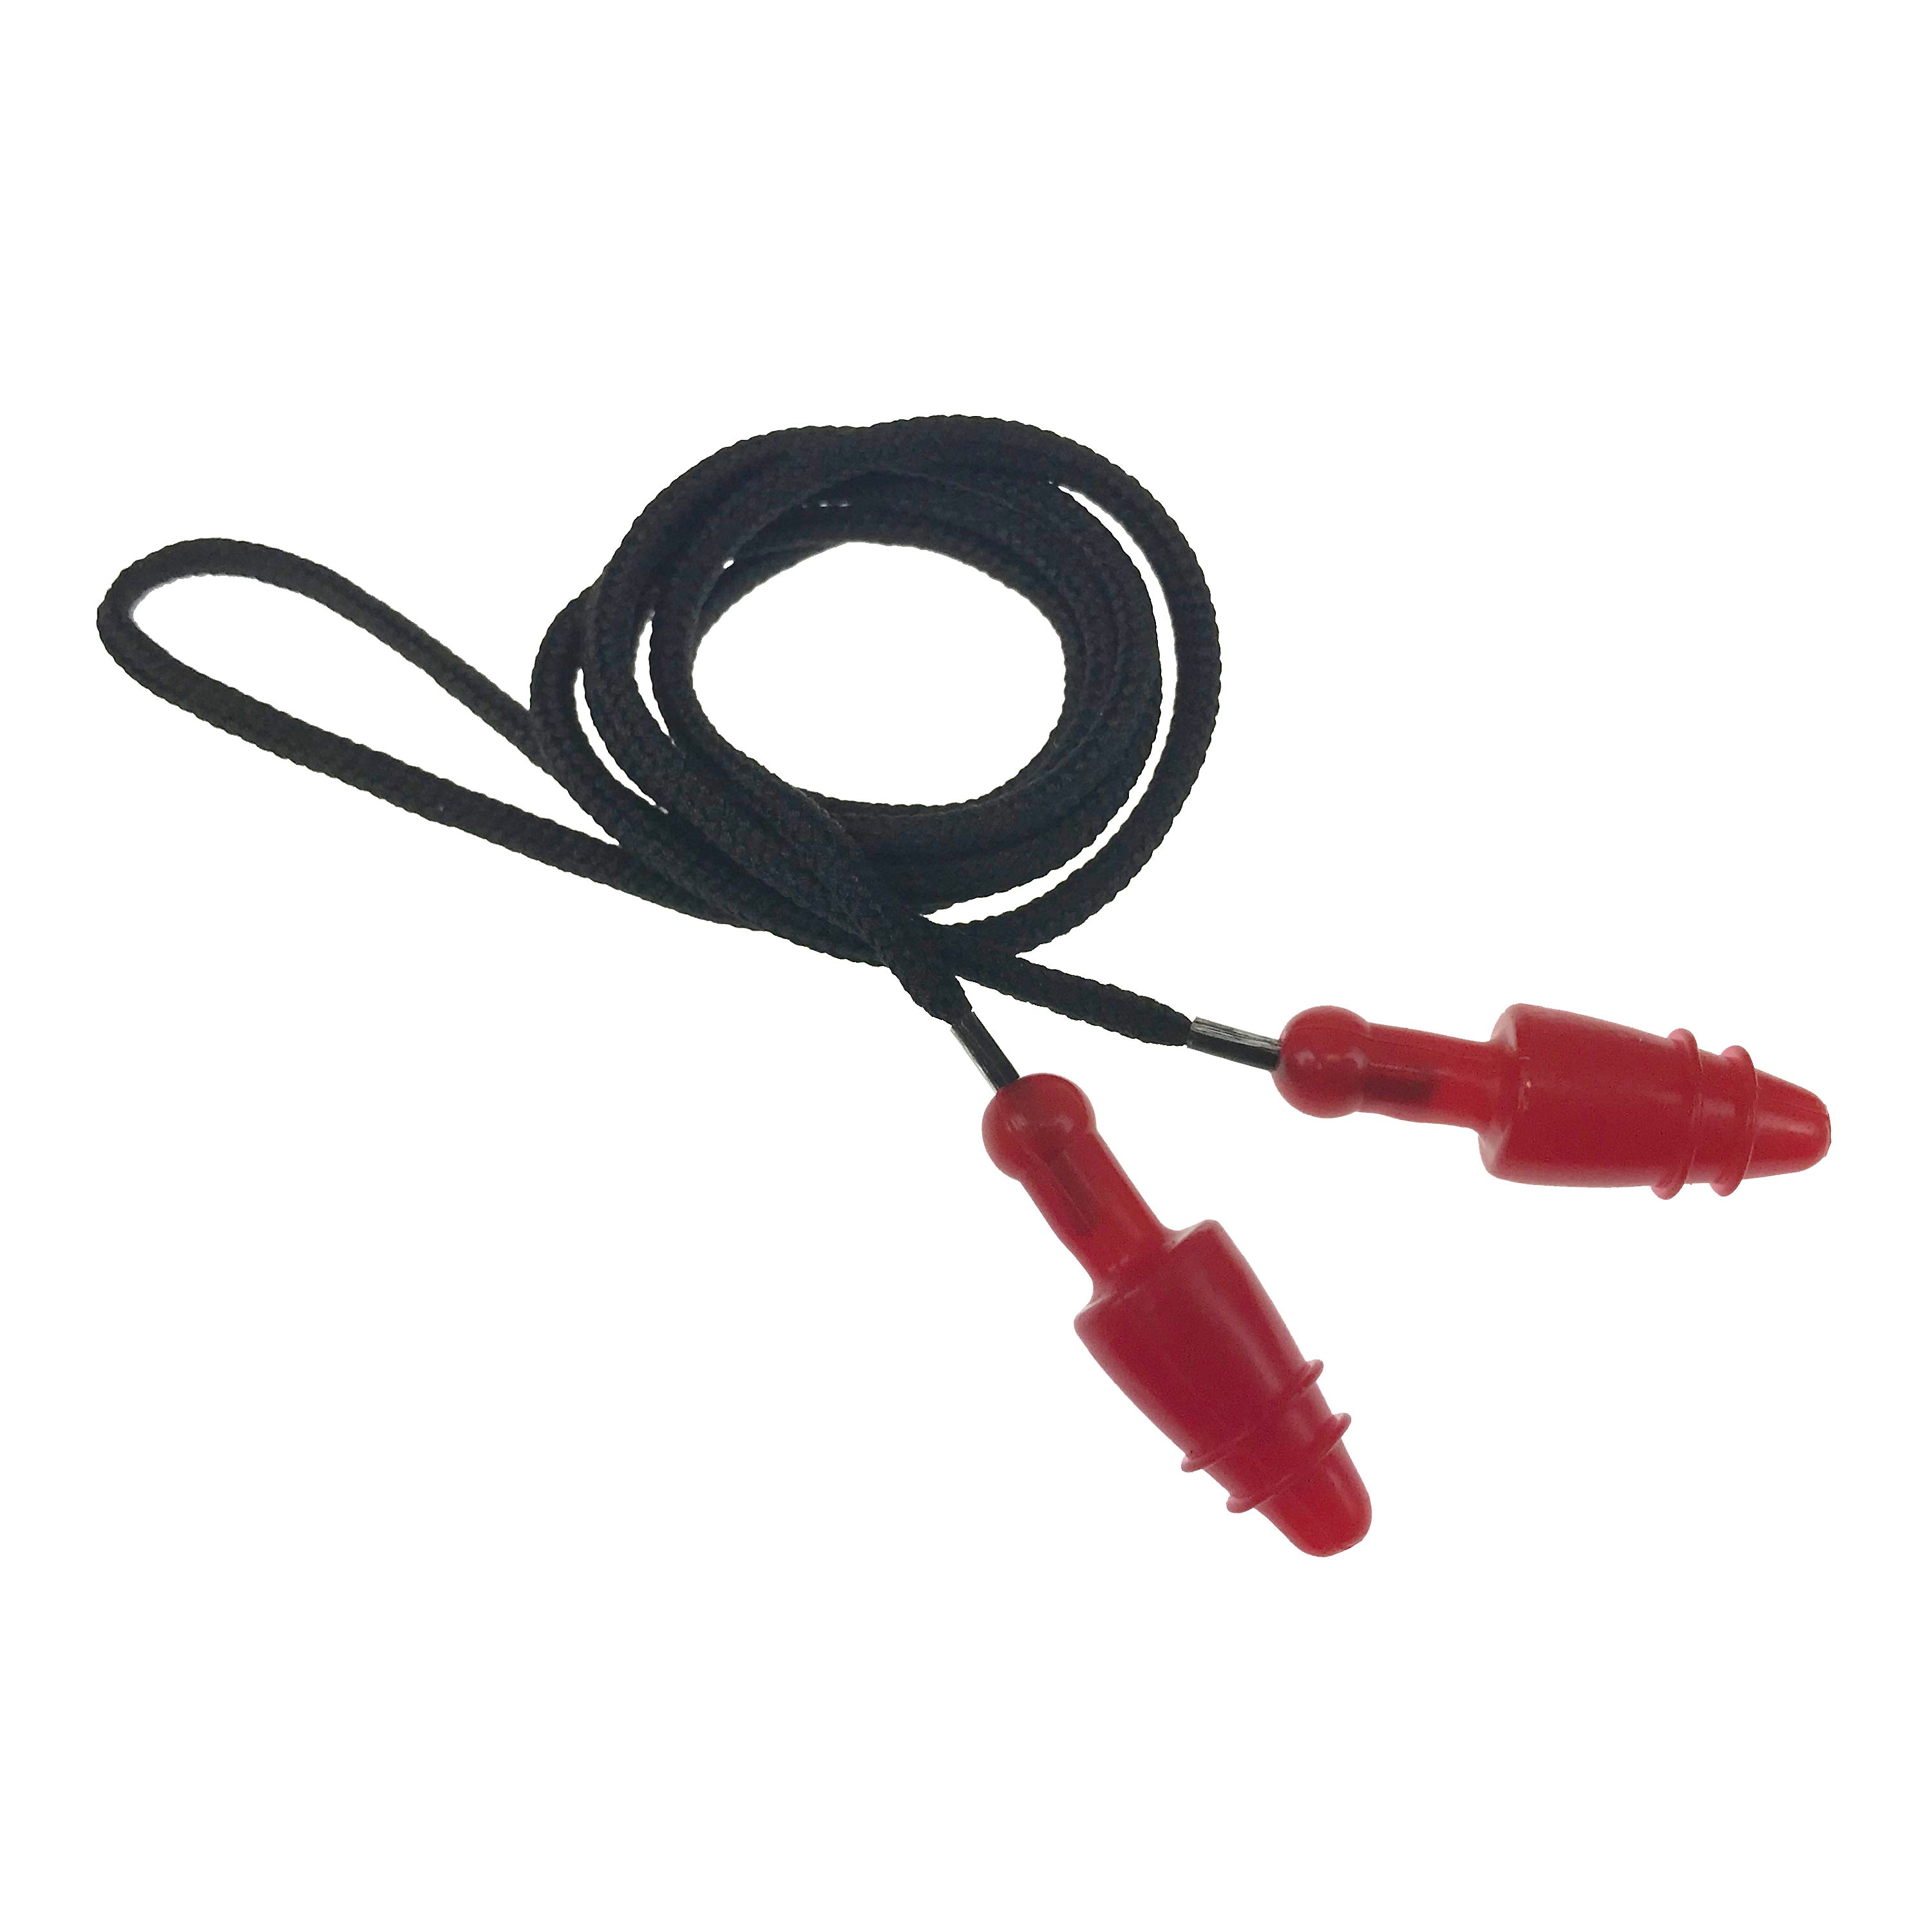 Tapones para los oídos Snug Plug - Con cable - en bolsa de plástico